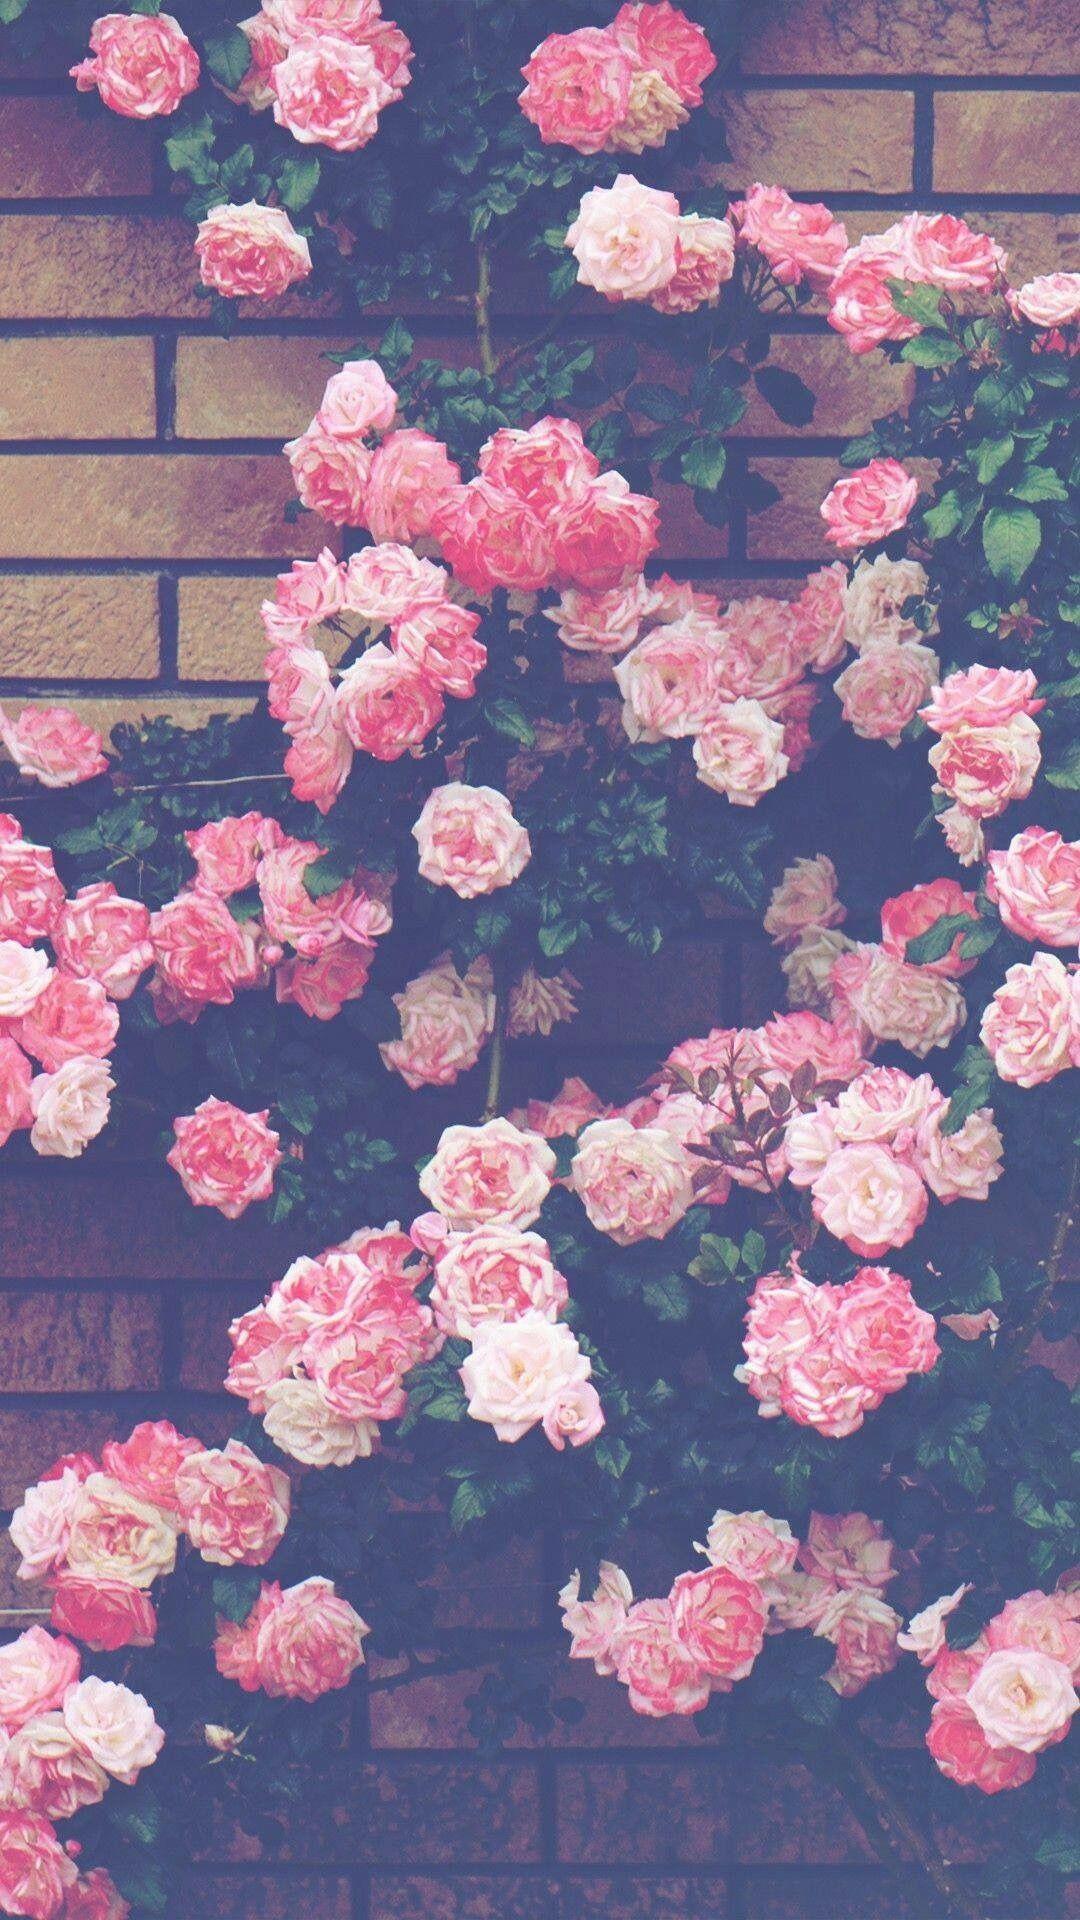 Hình nền hoa hồng cổ điển cho iPhone sẽ làm cho thiết bị của bạn đẹp hơn bao giờ hết. Những bông hoa hồng cổ điển tươi mới sẽ tạo cho màn hình iPhone của bạn mùa xuân cuốn hút. Xem hình ảnh liên quan để phát hiện ra sức quyến rũ của loại hình này.